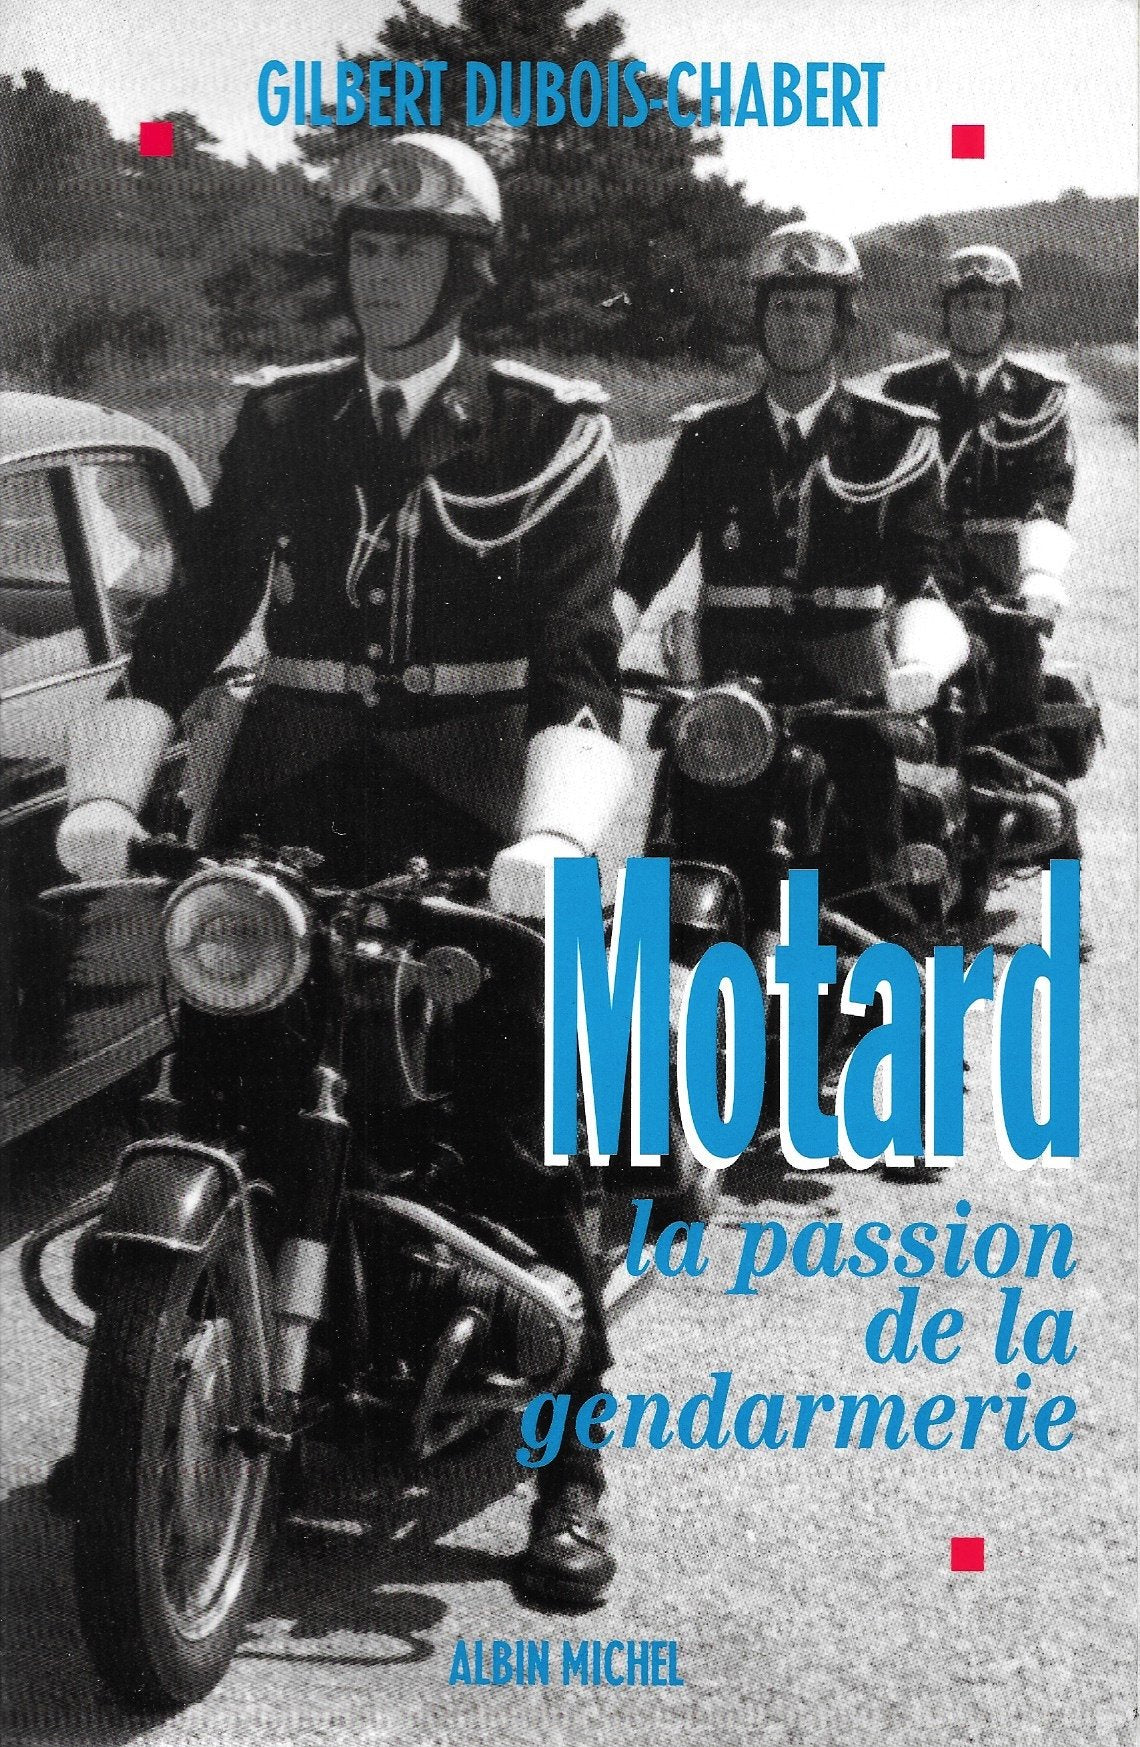 Livre ISBN 2226067876 Motard : la passion de la gendarmerie (Gilbert Dubois-Chabert)